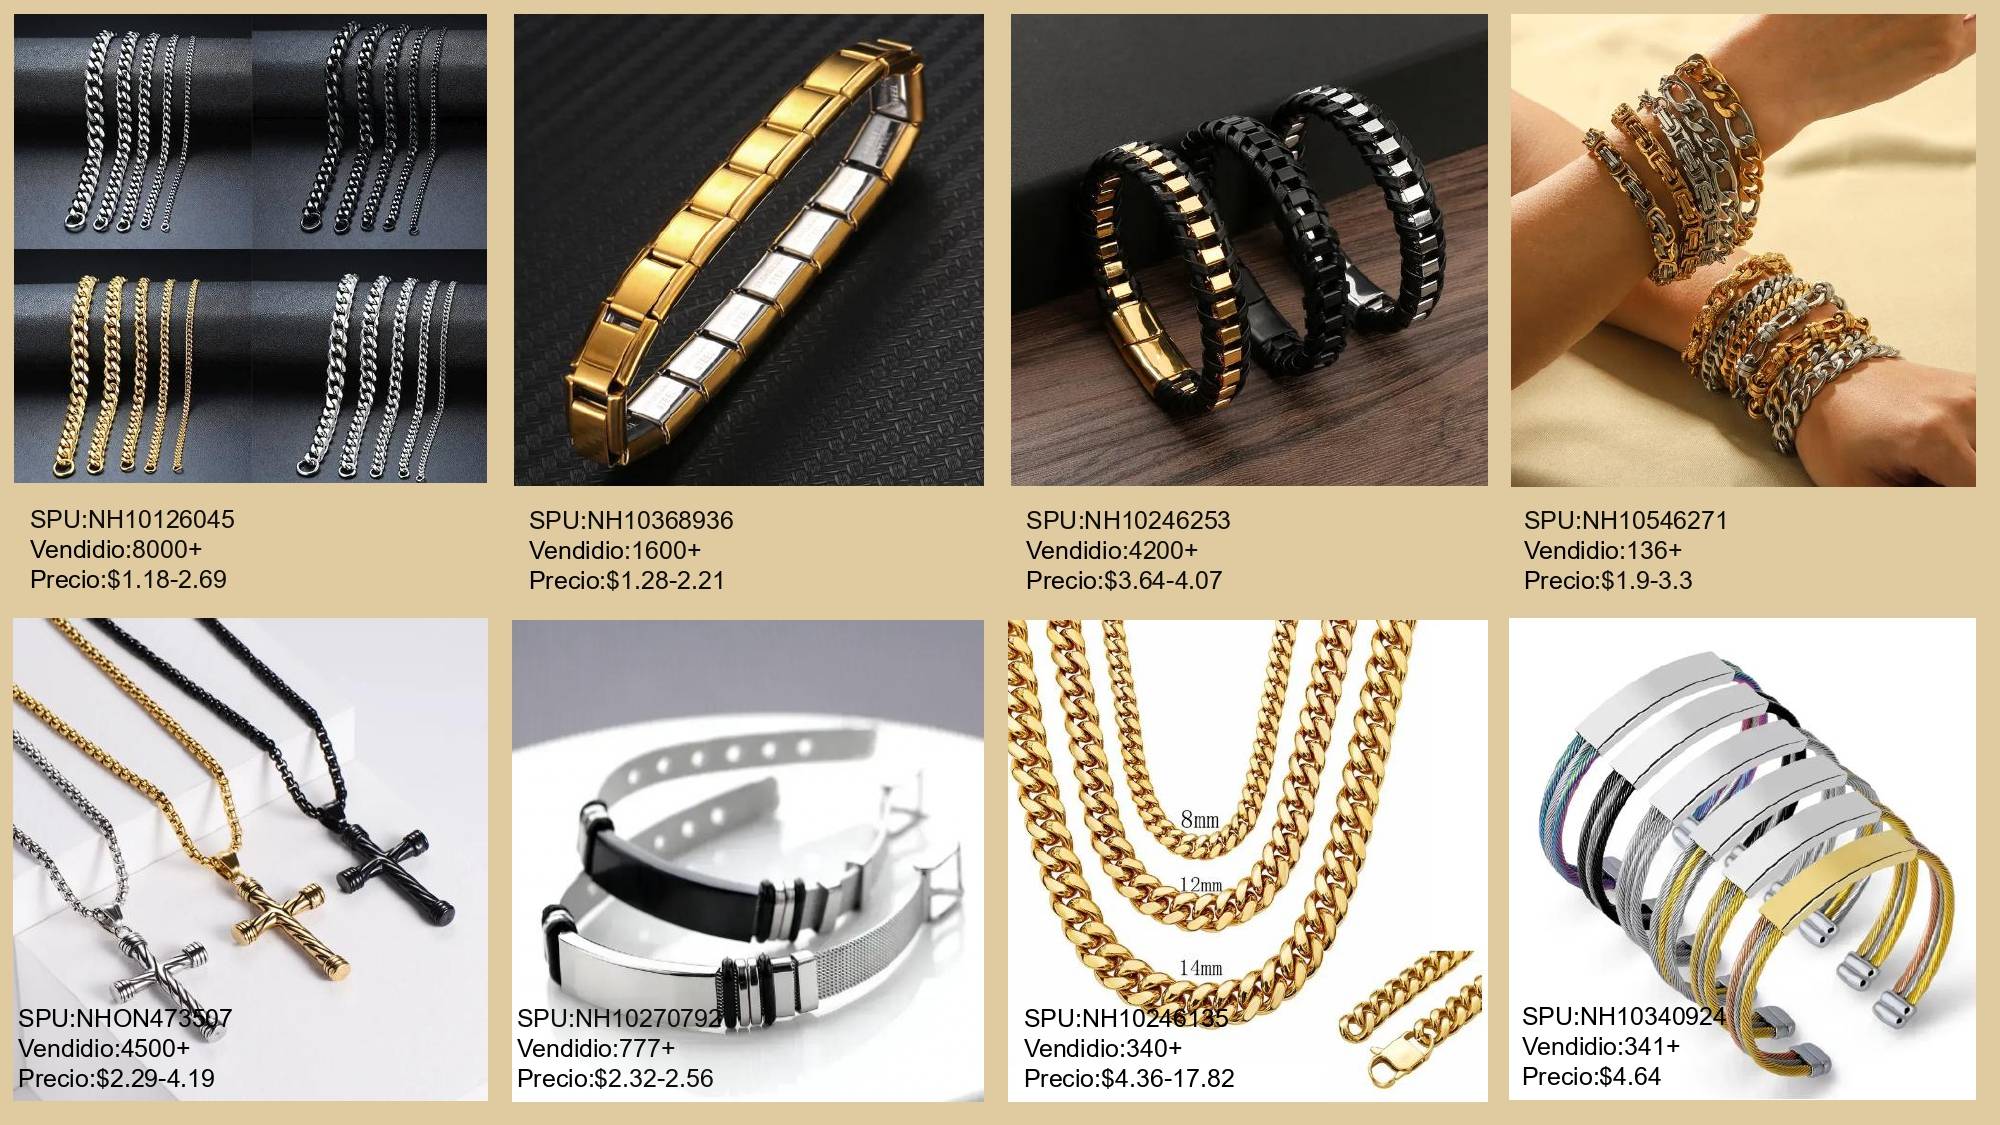 Navegue por Nihaojewelry para descubrir más productos al por mayor de joyería para hombre de calidad a precios increíbles.